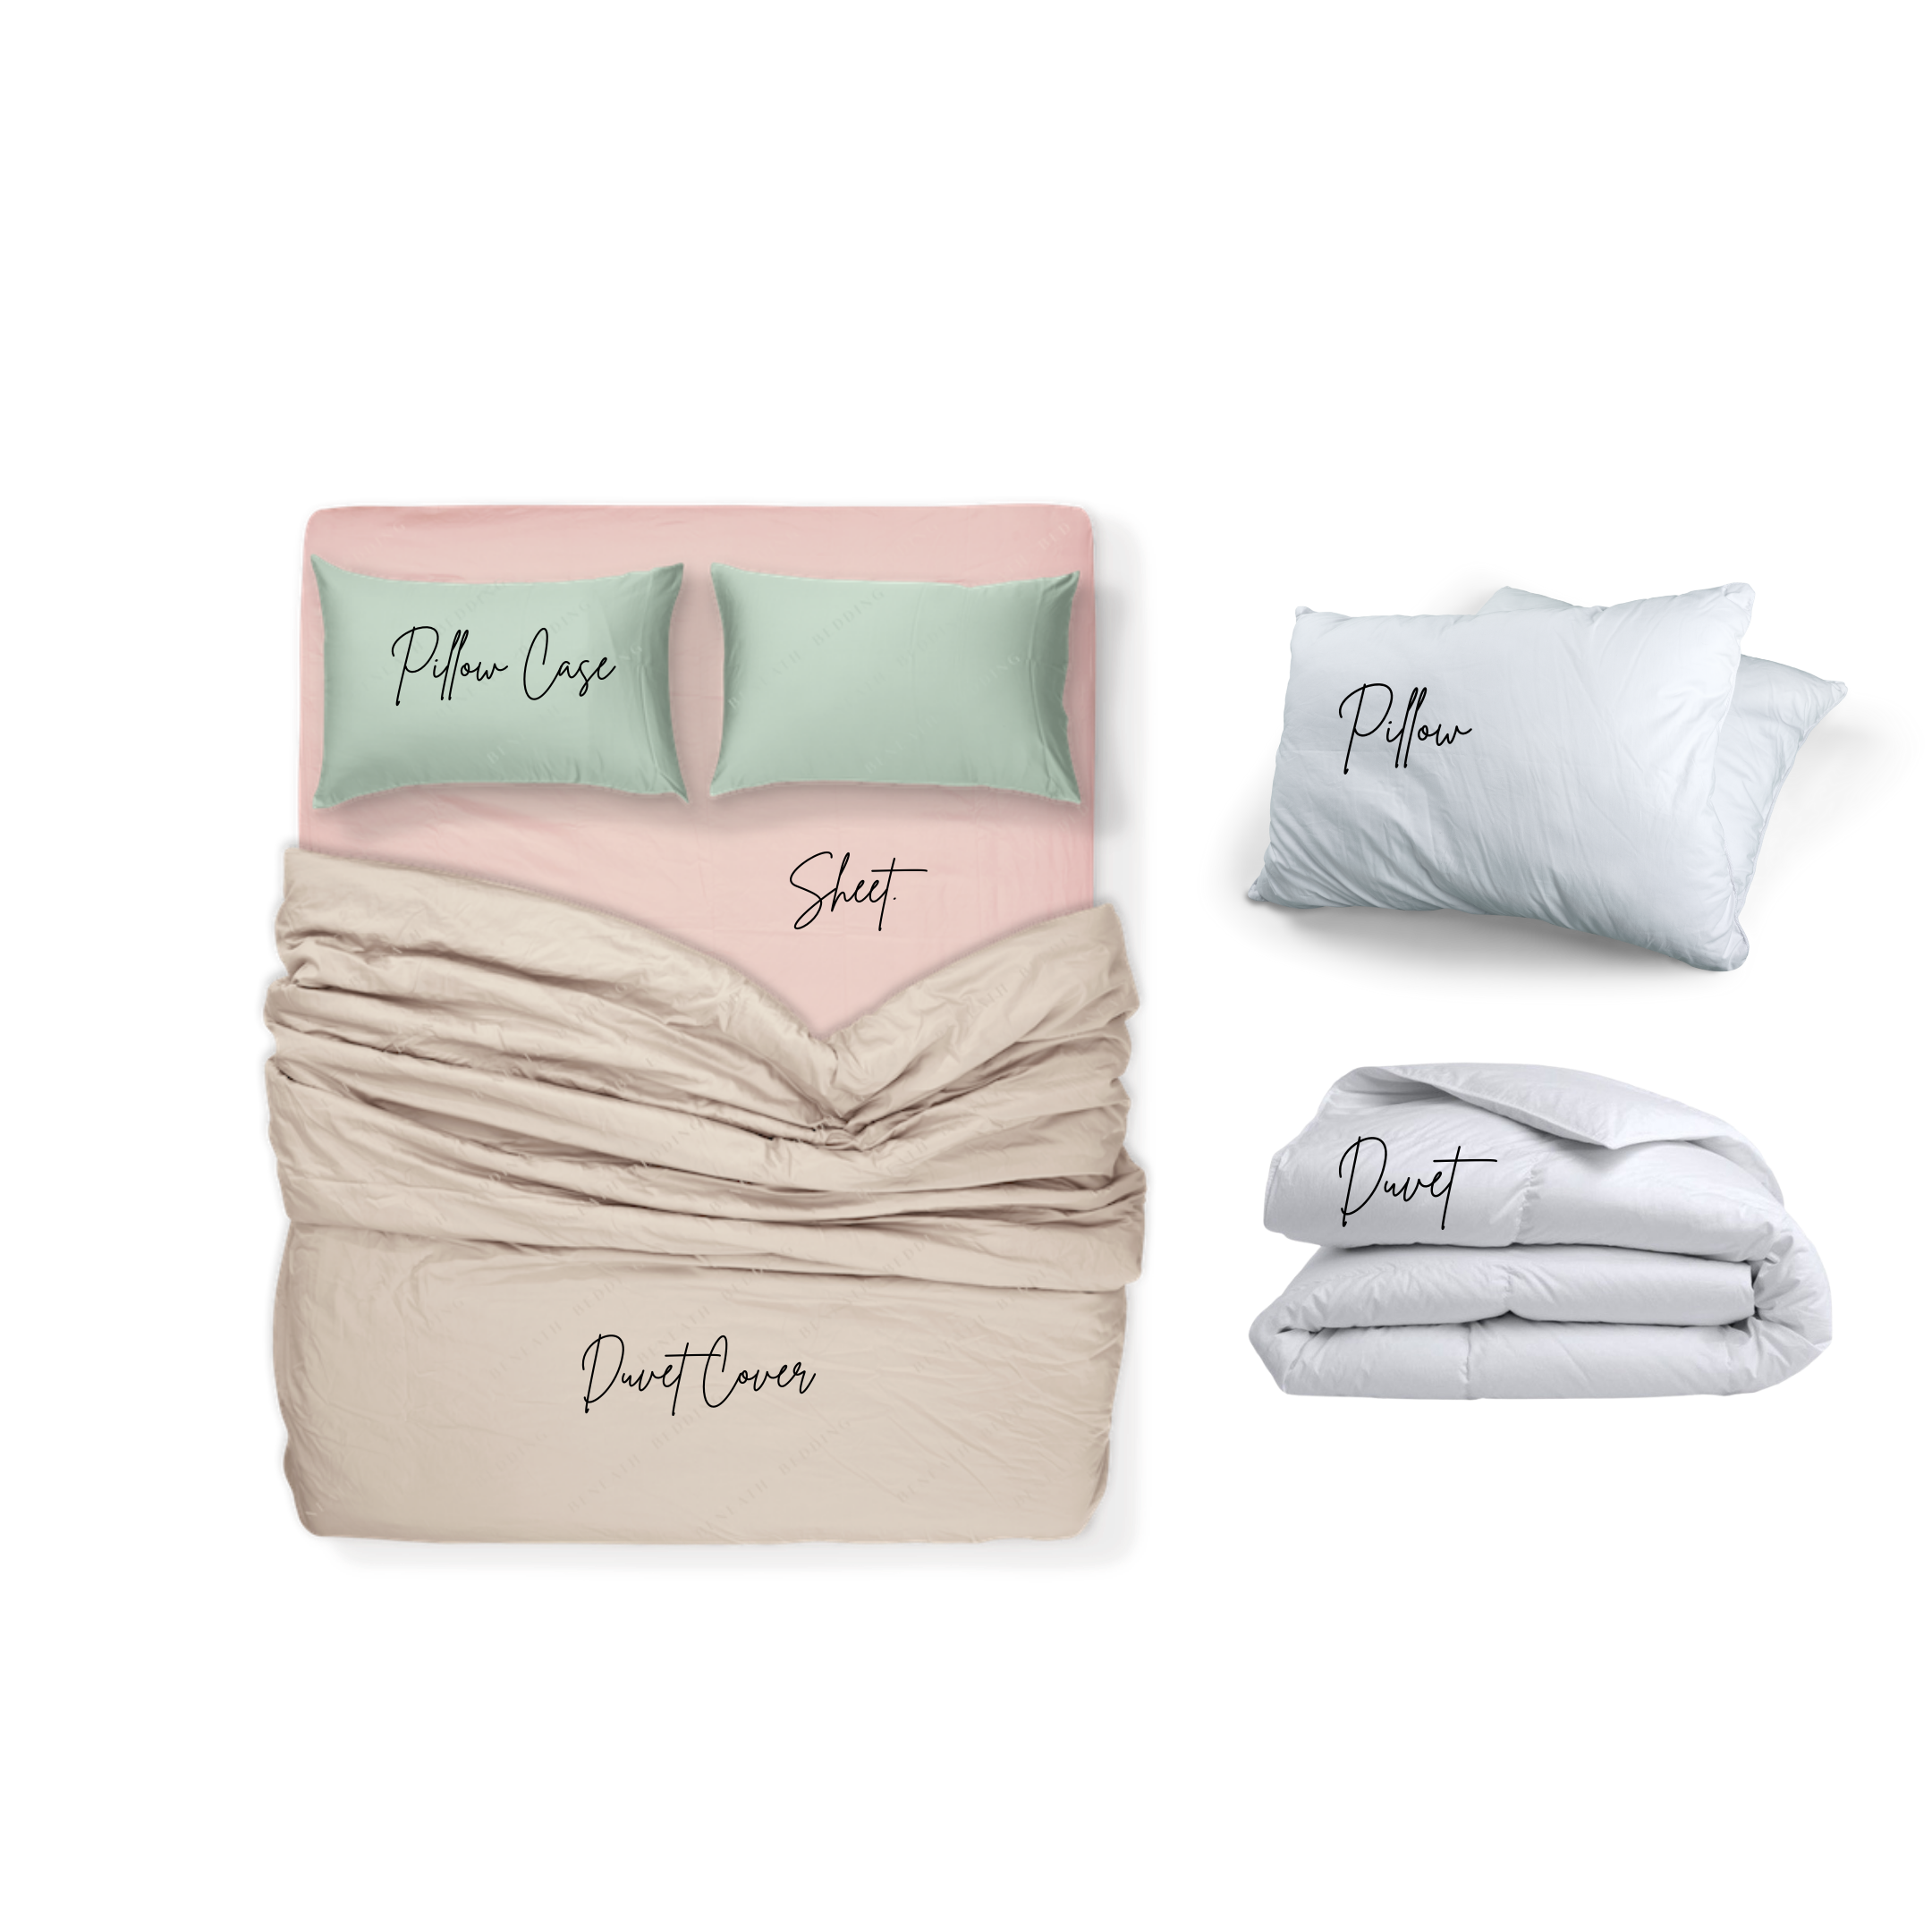 ชุดผ้าปูที่นอนสีชมพูอ่อน ผ้าห่มสีทราย หมอนสีเขียวพาสเทล พร้อมหมอน และผ้านวมสีขาว